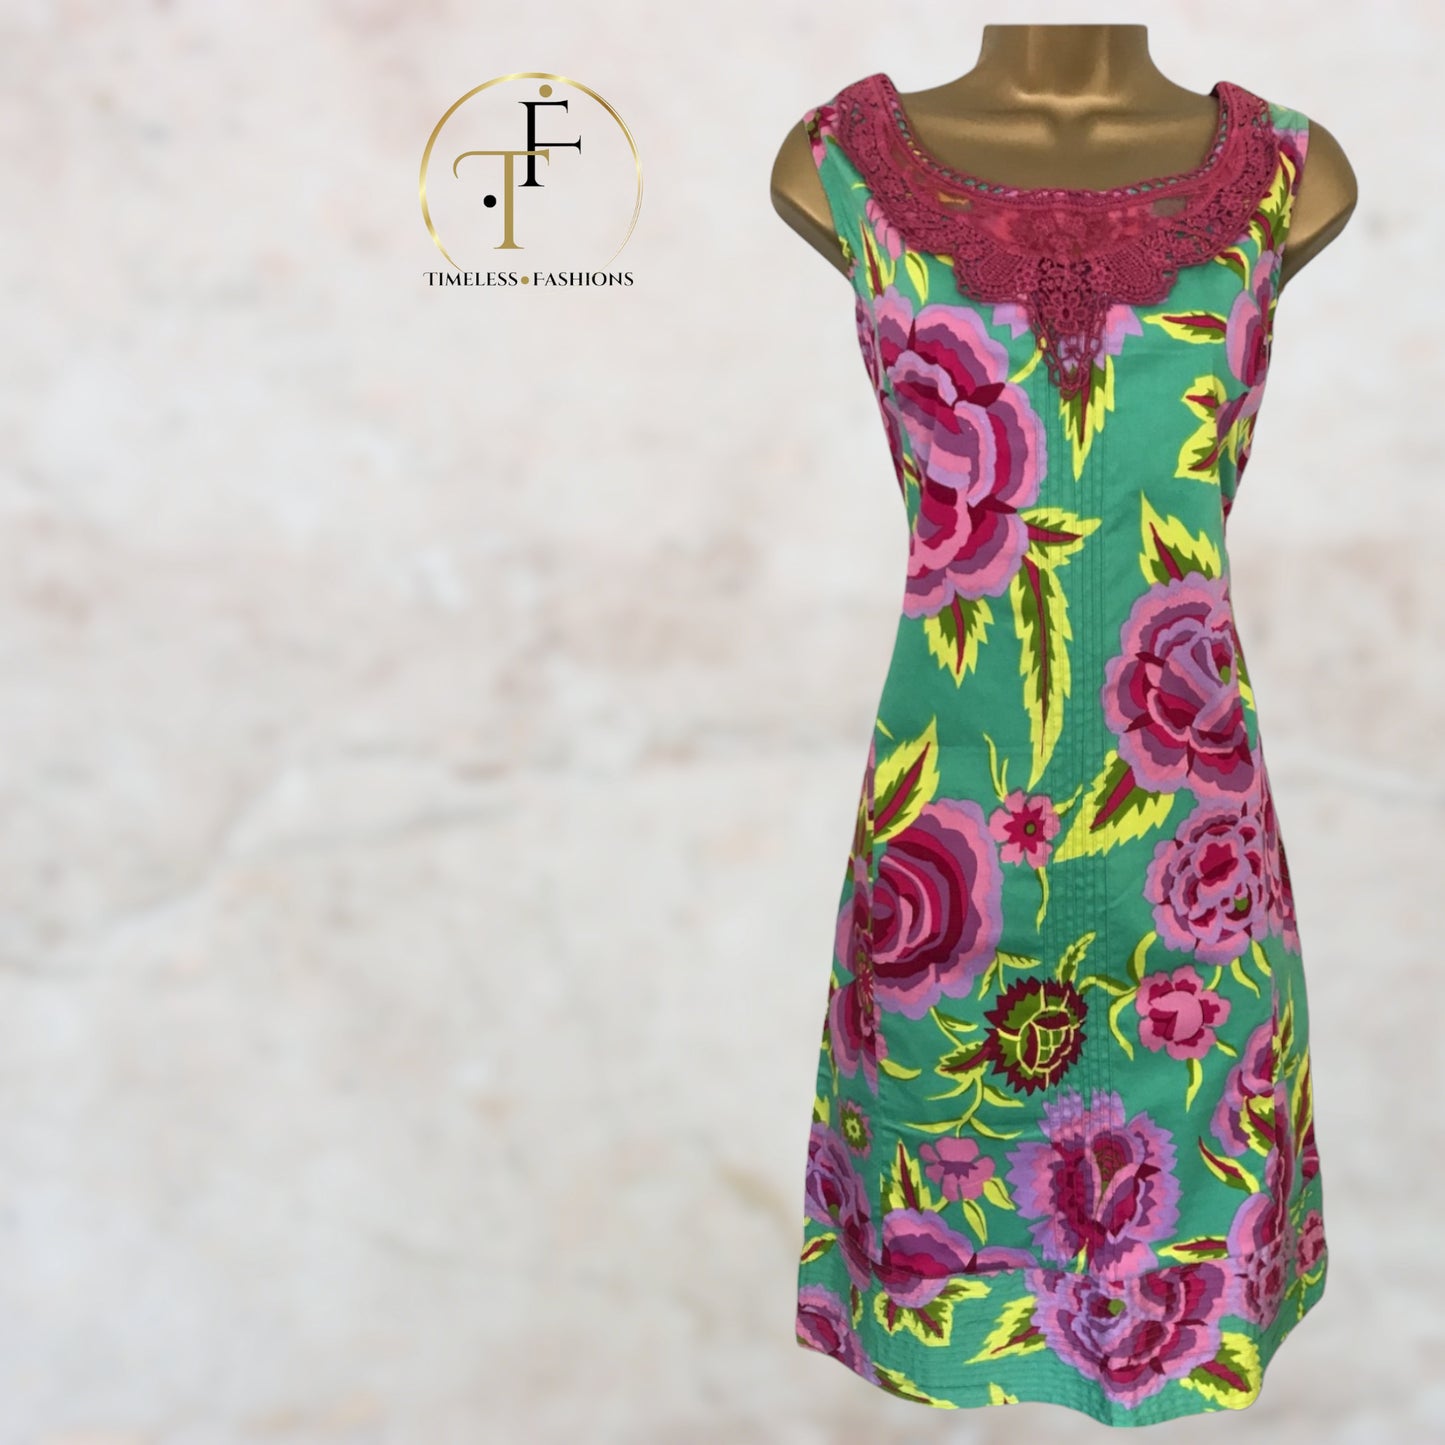 Almatrichi Green & Pink Floral Cotton Dress UK 10 US 6 EU 38 Timeless Fashions